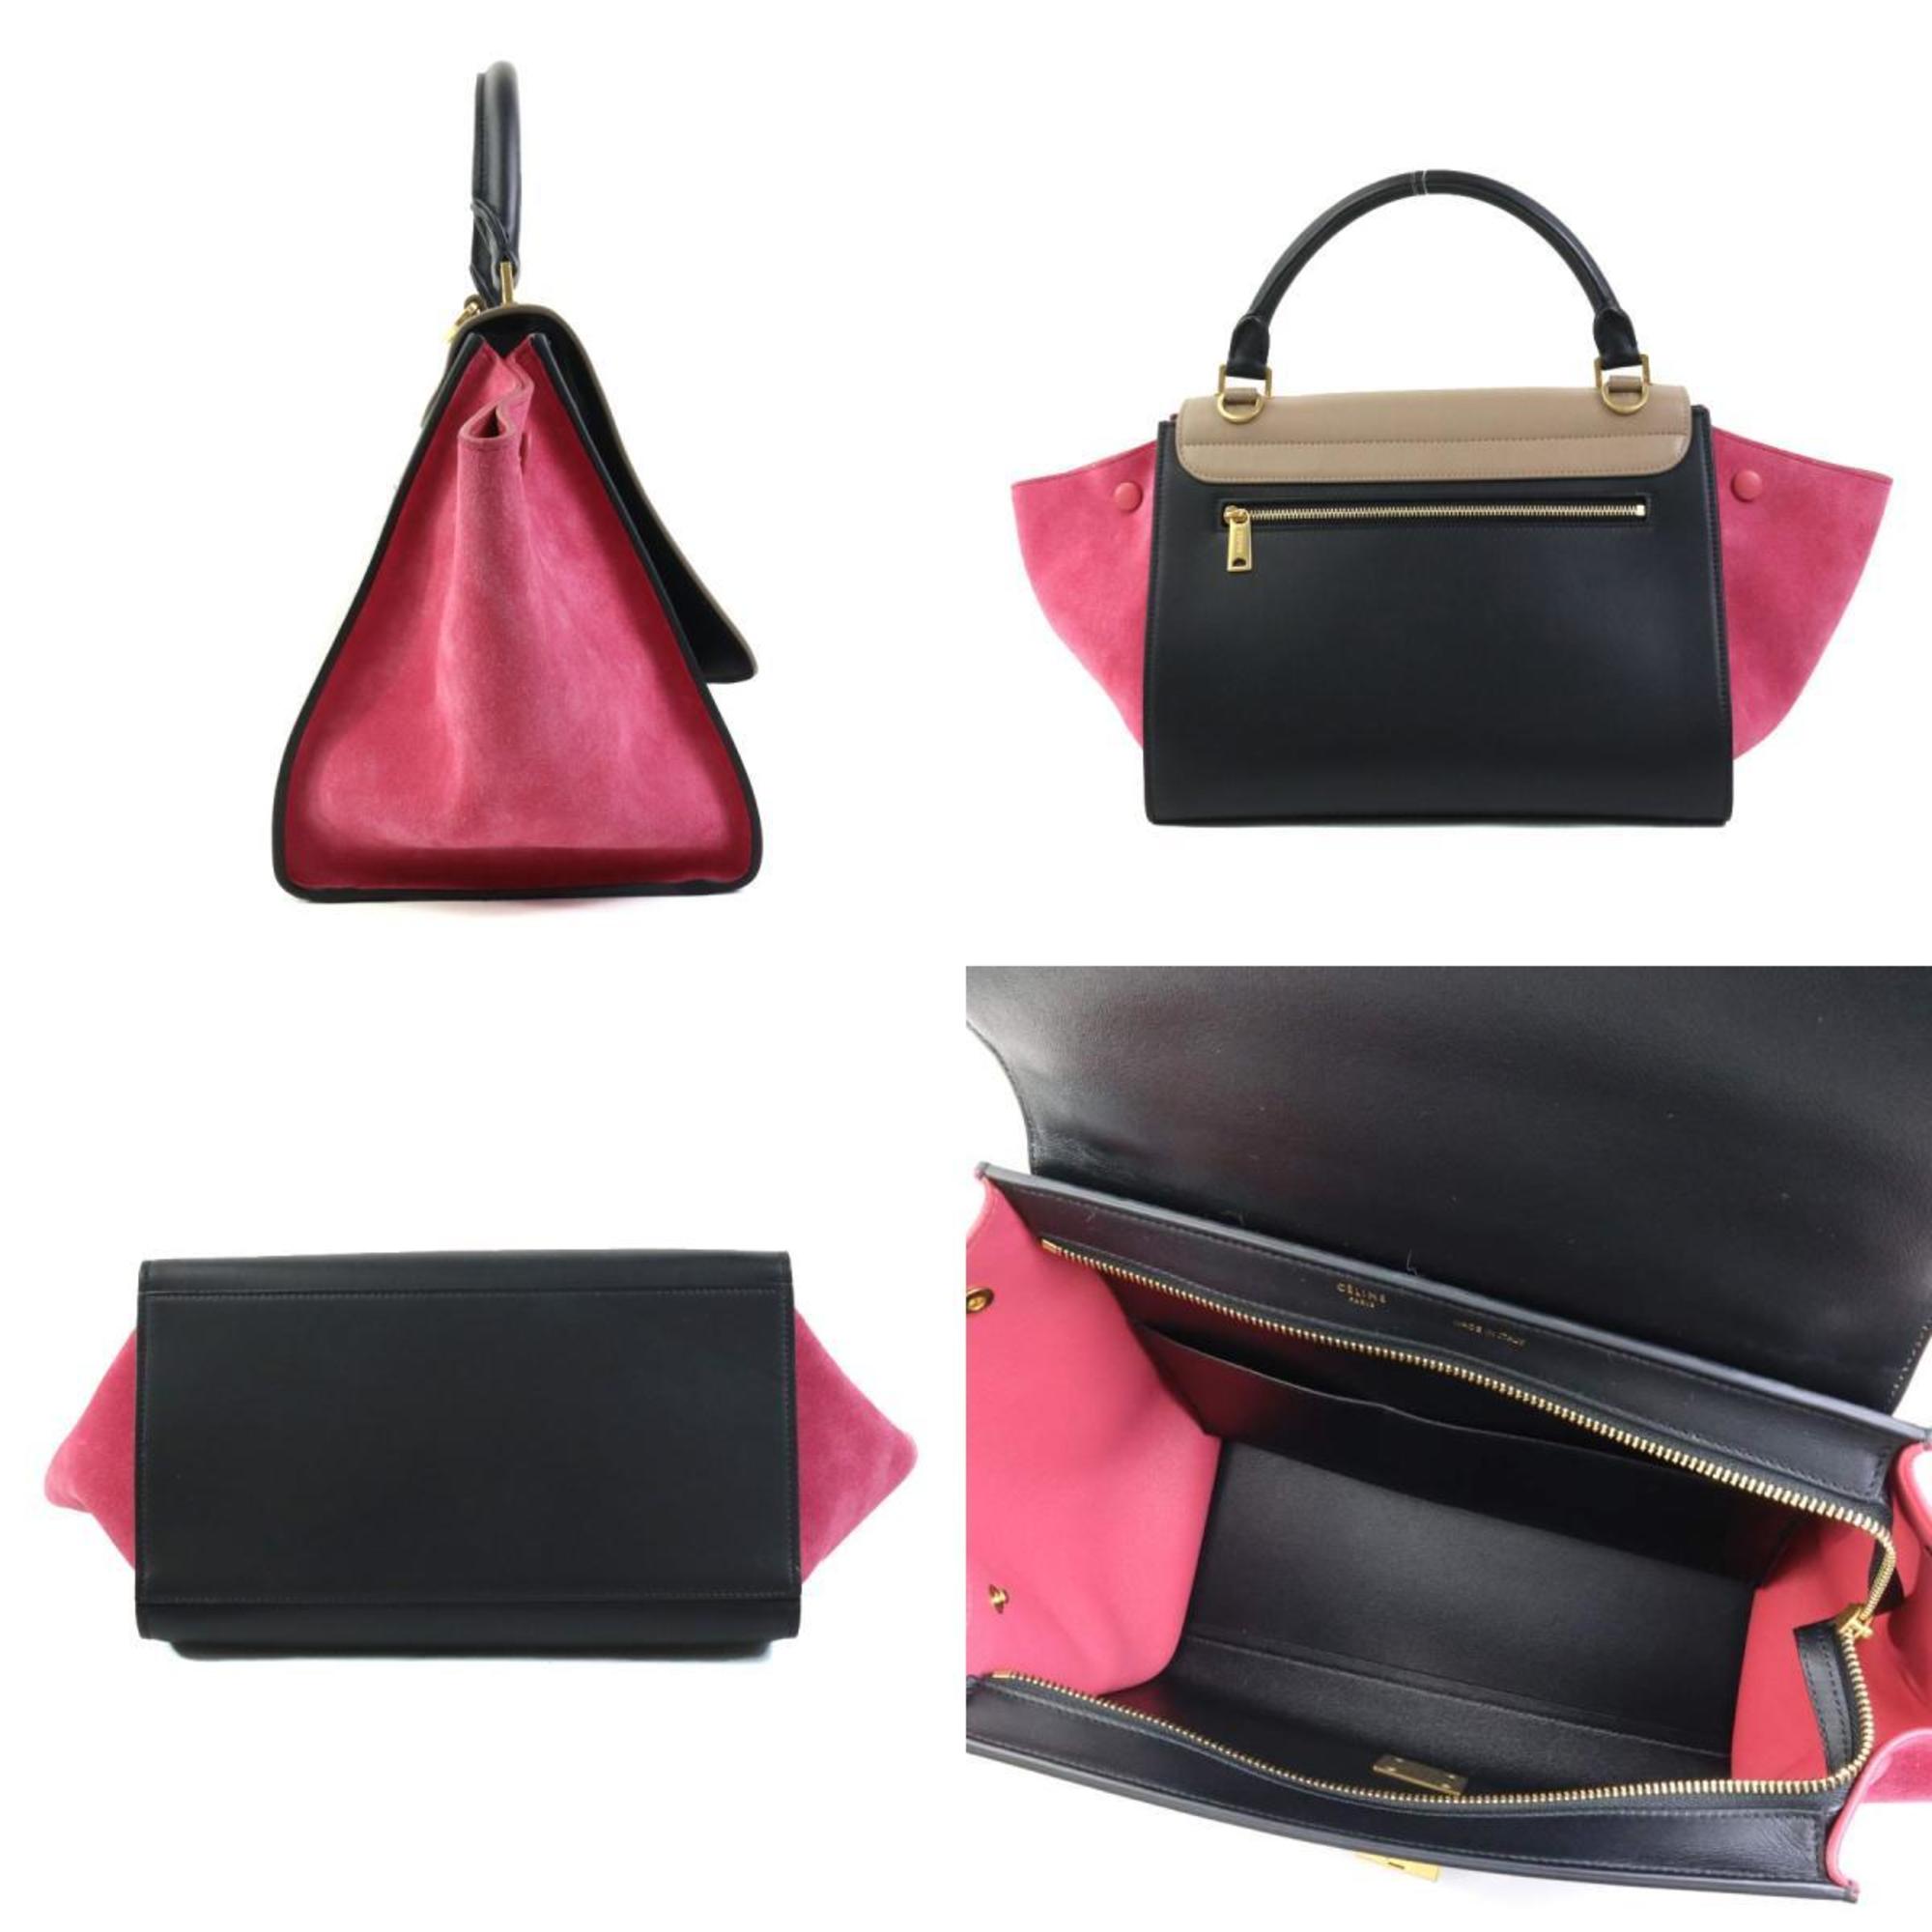 CELINE handbag shoulder bag trapeze leather suede brown black pink gold women's e58740g